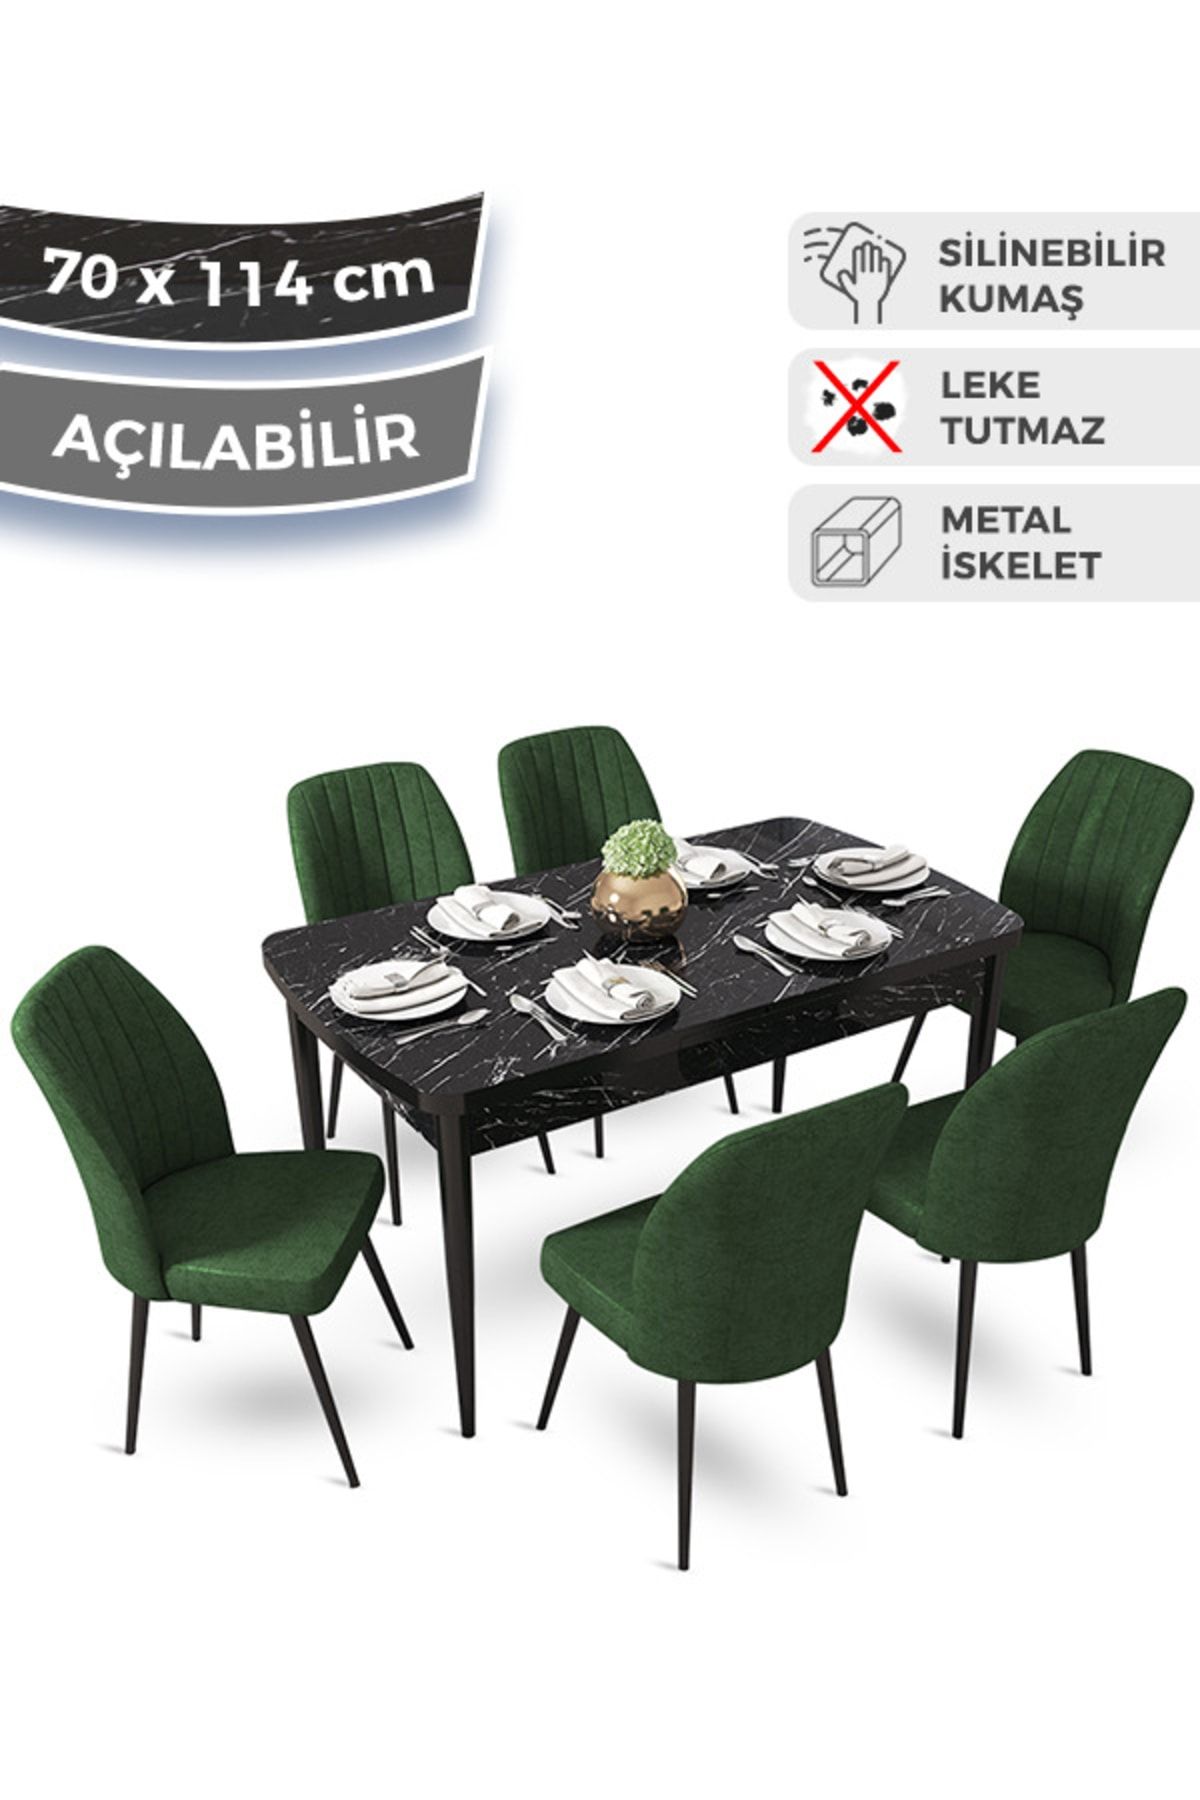 Canisa Concept Ege Serisi 70x114 Açılabilir Mutfak Masa Takımı Siyah Mermer Desen Masa ve 6 Haki Yeşil Sandalye